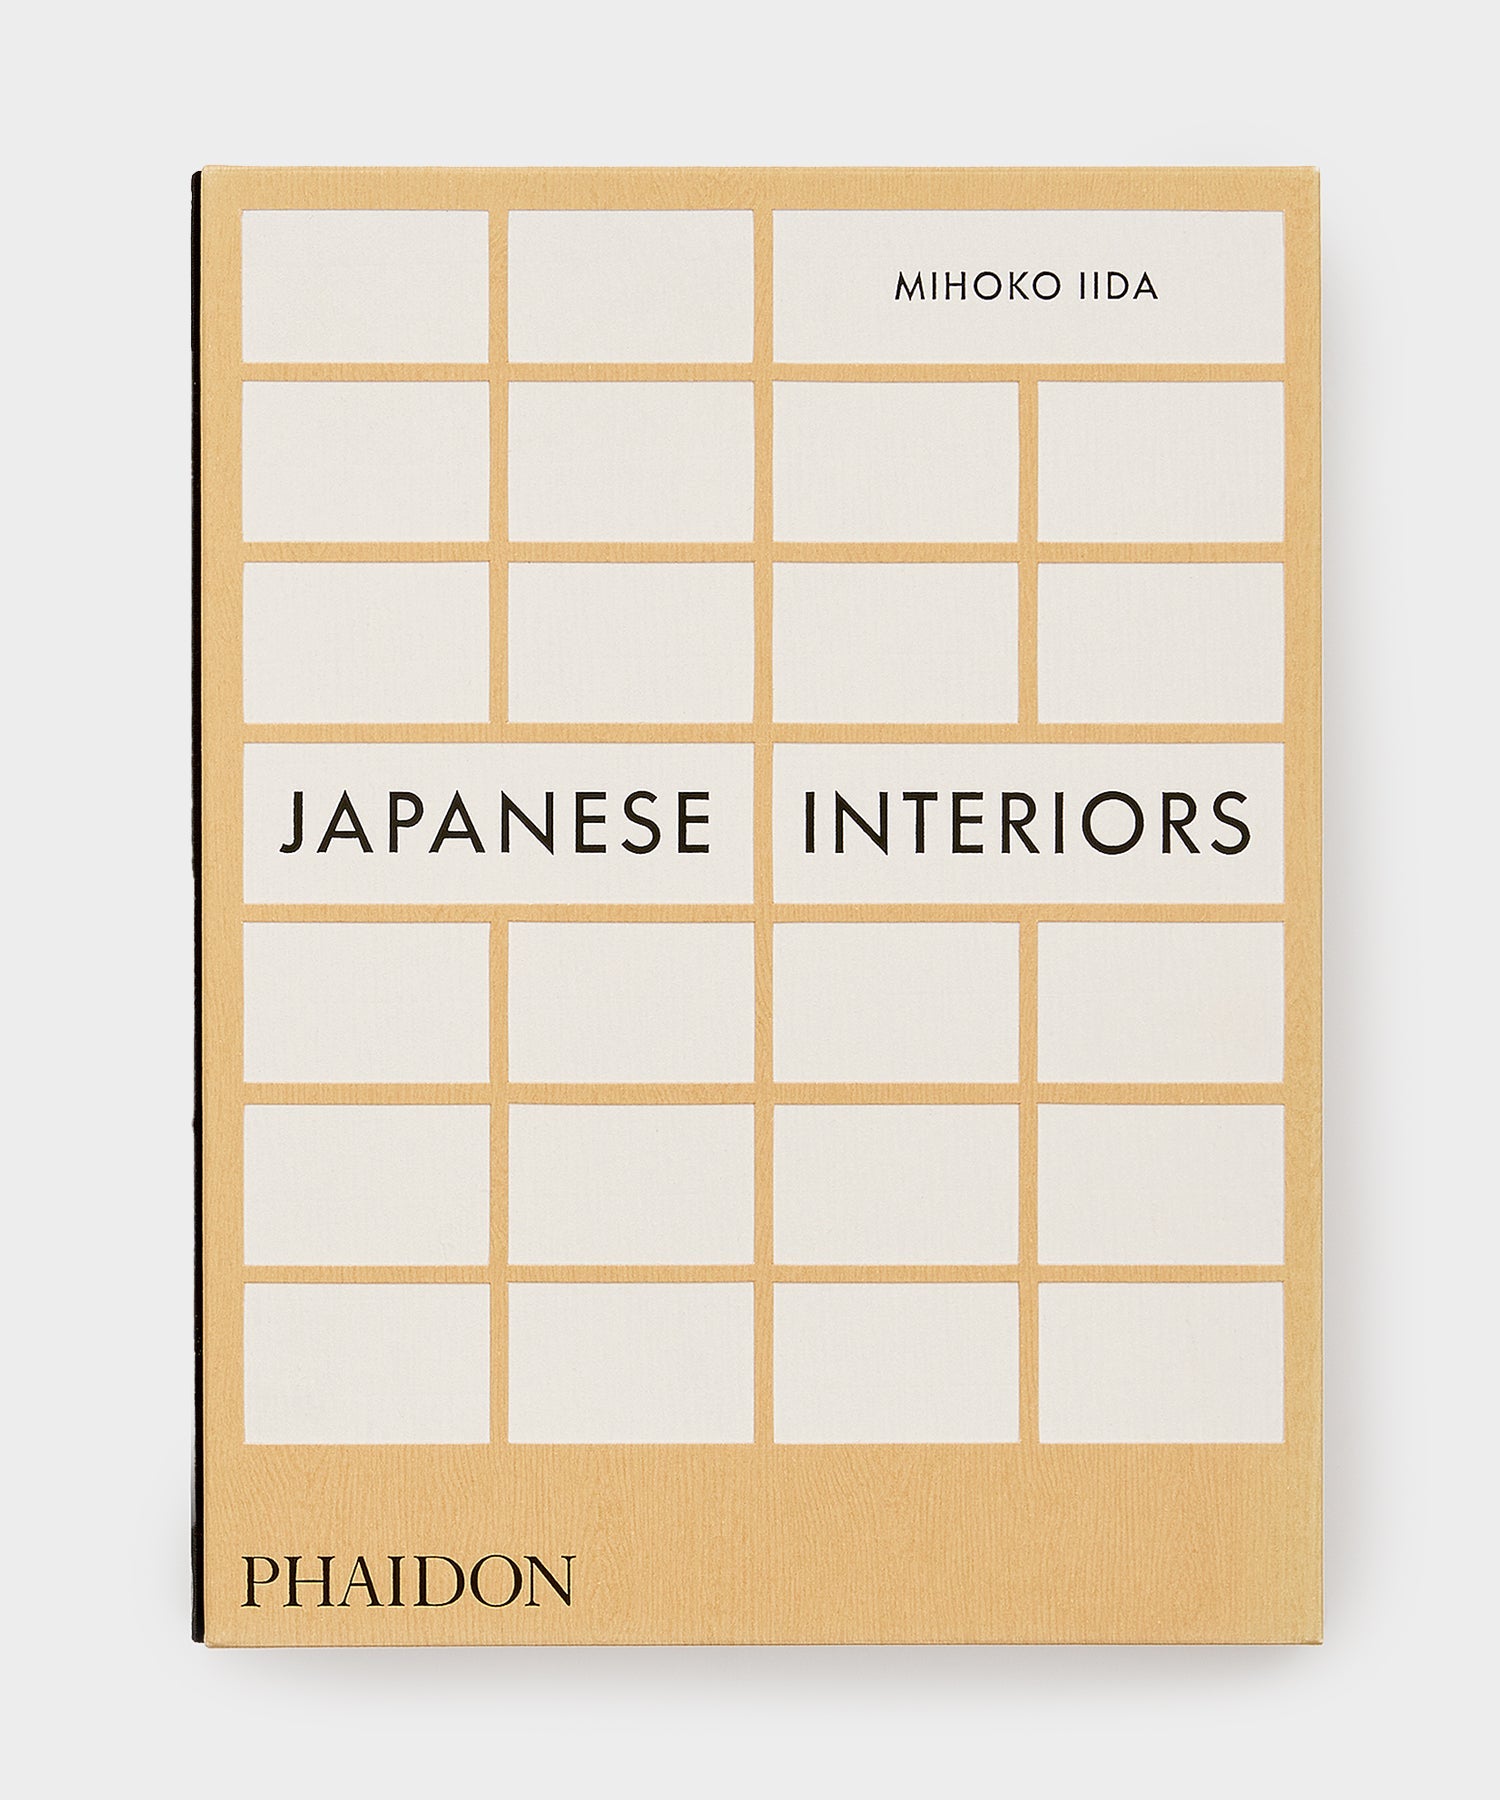 Phaidon " Japanese Interiors by Mihoko Iida "